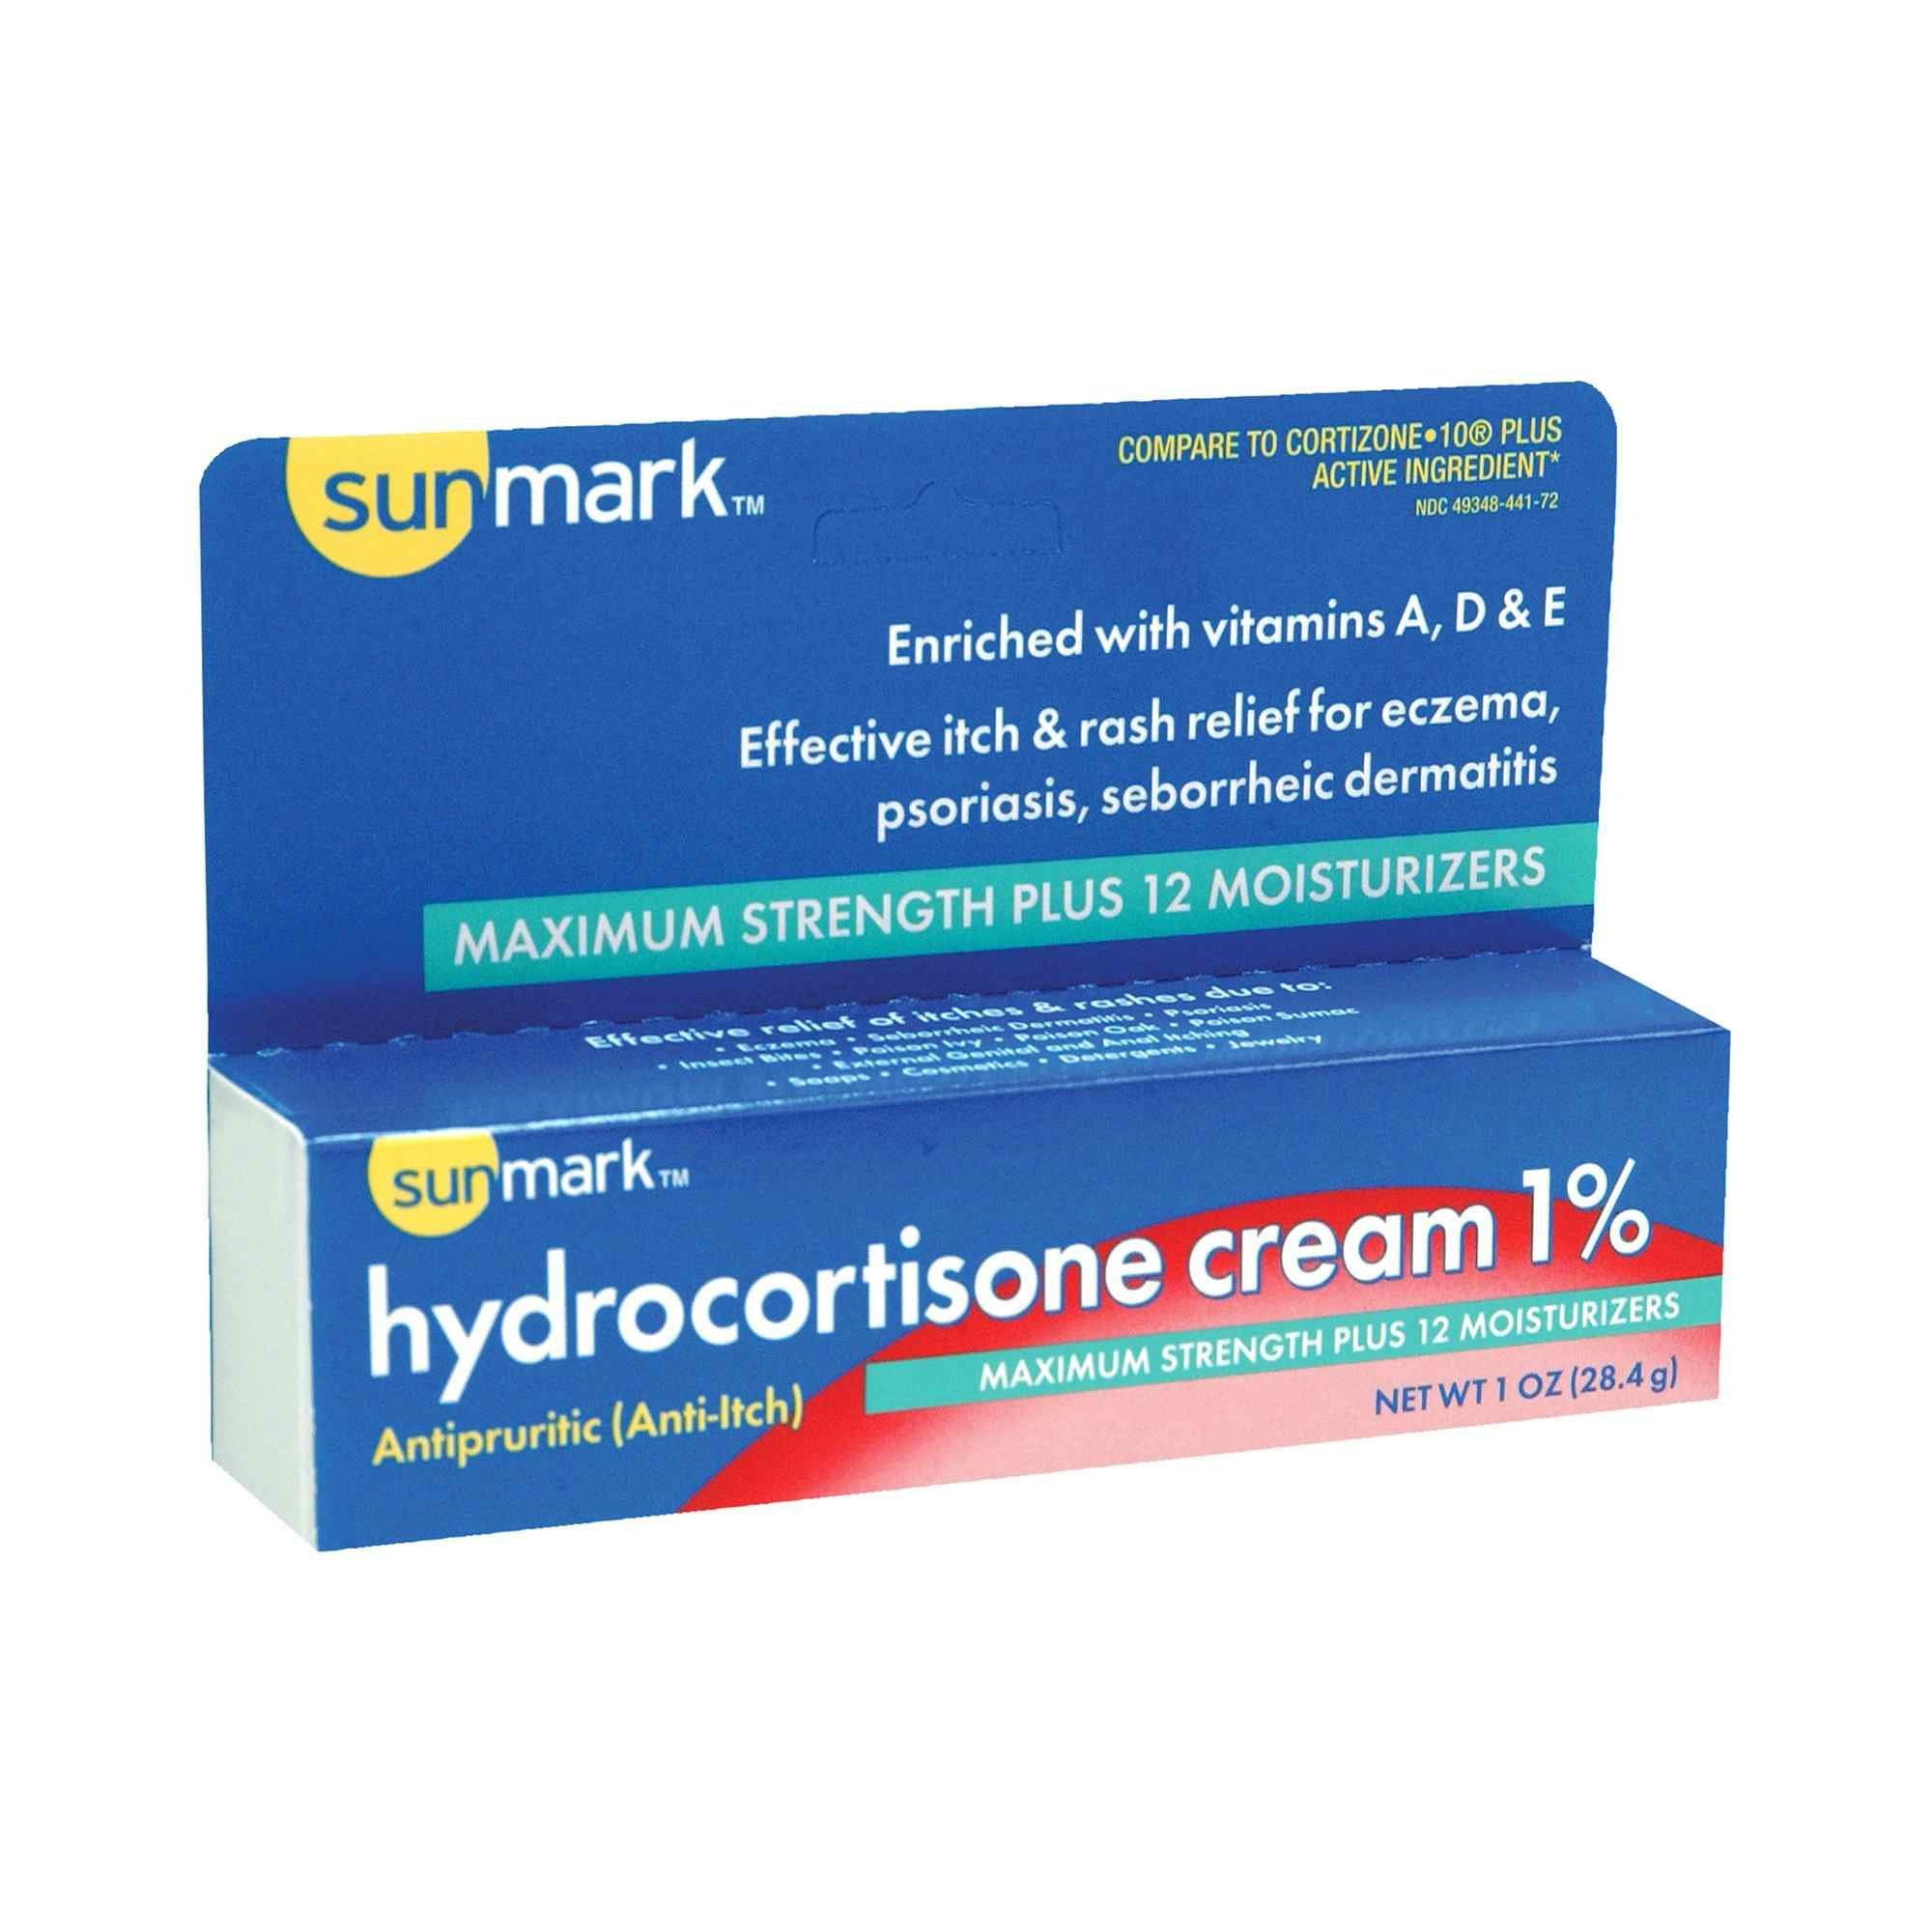 sunmark Hydrocortisone Cream, 1% Maximum Strength